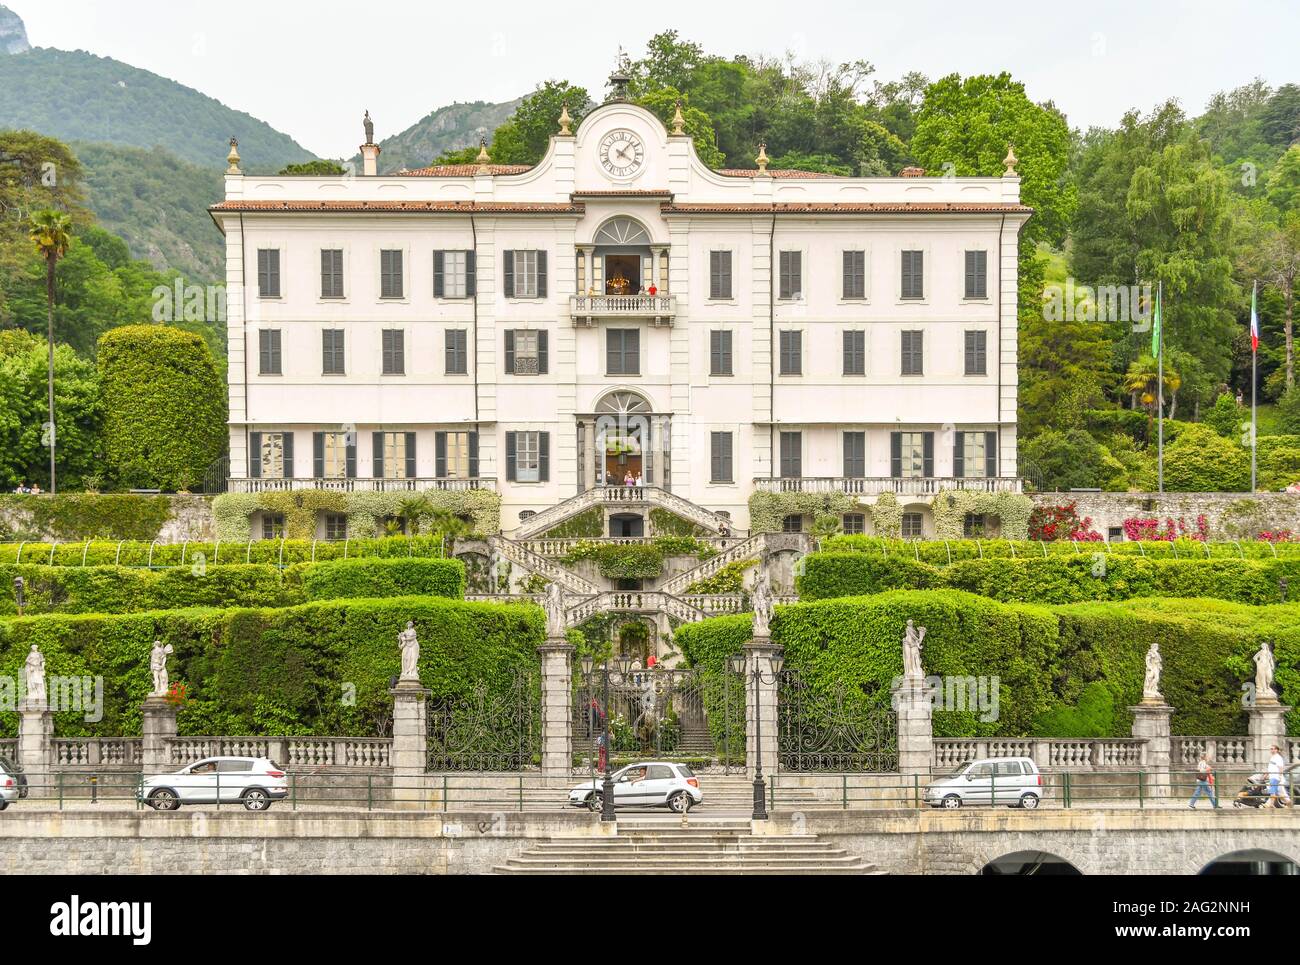 TREMEZZO LAGO DI COMO, Italia - Giugno 2019: vista esterna della Villa Carlotta a Tremezzo sul Lago di Como. La villa ospita un museo e giardino Foto Stock